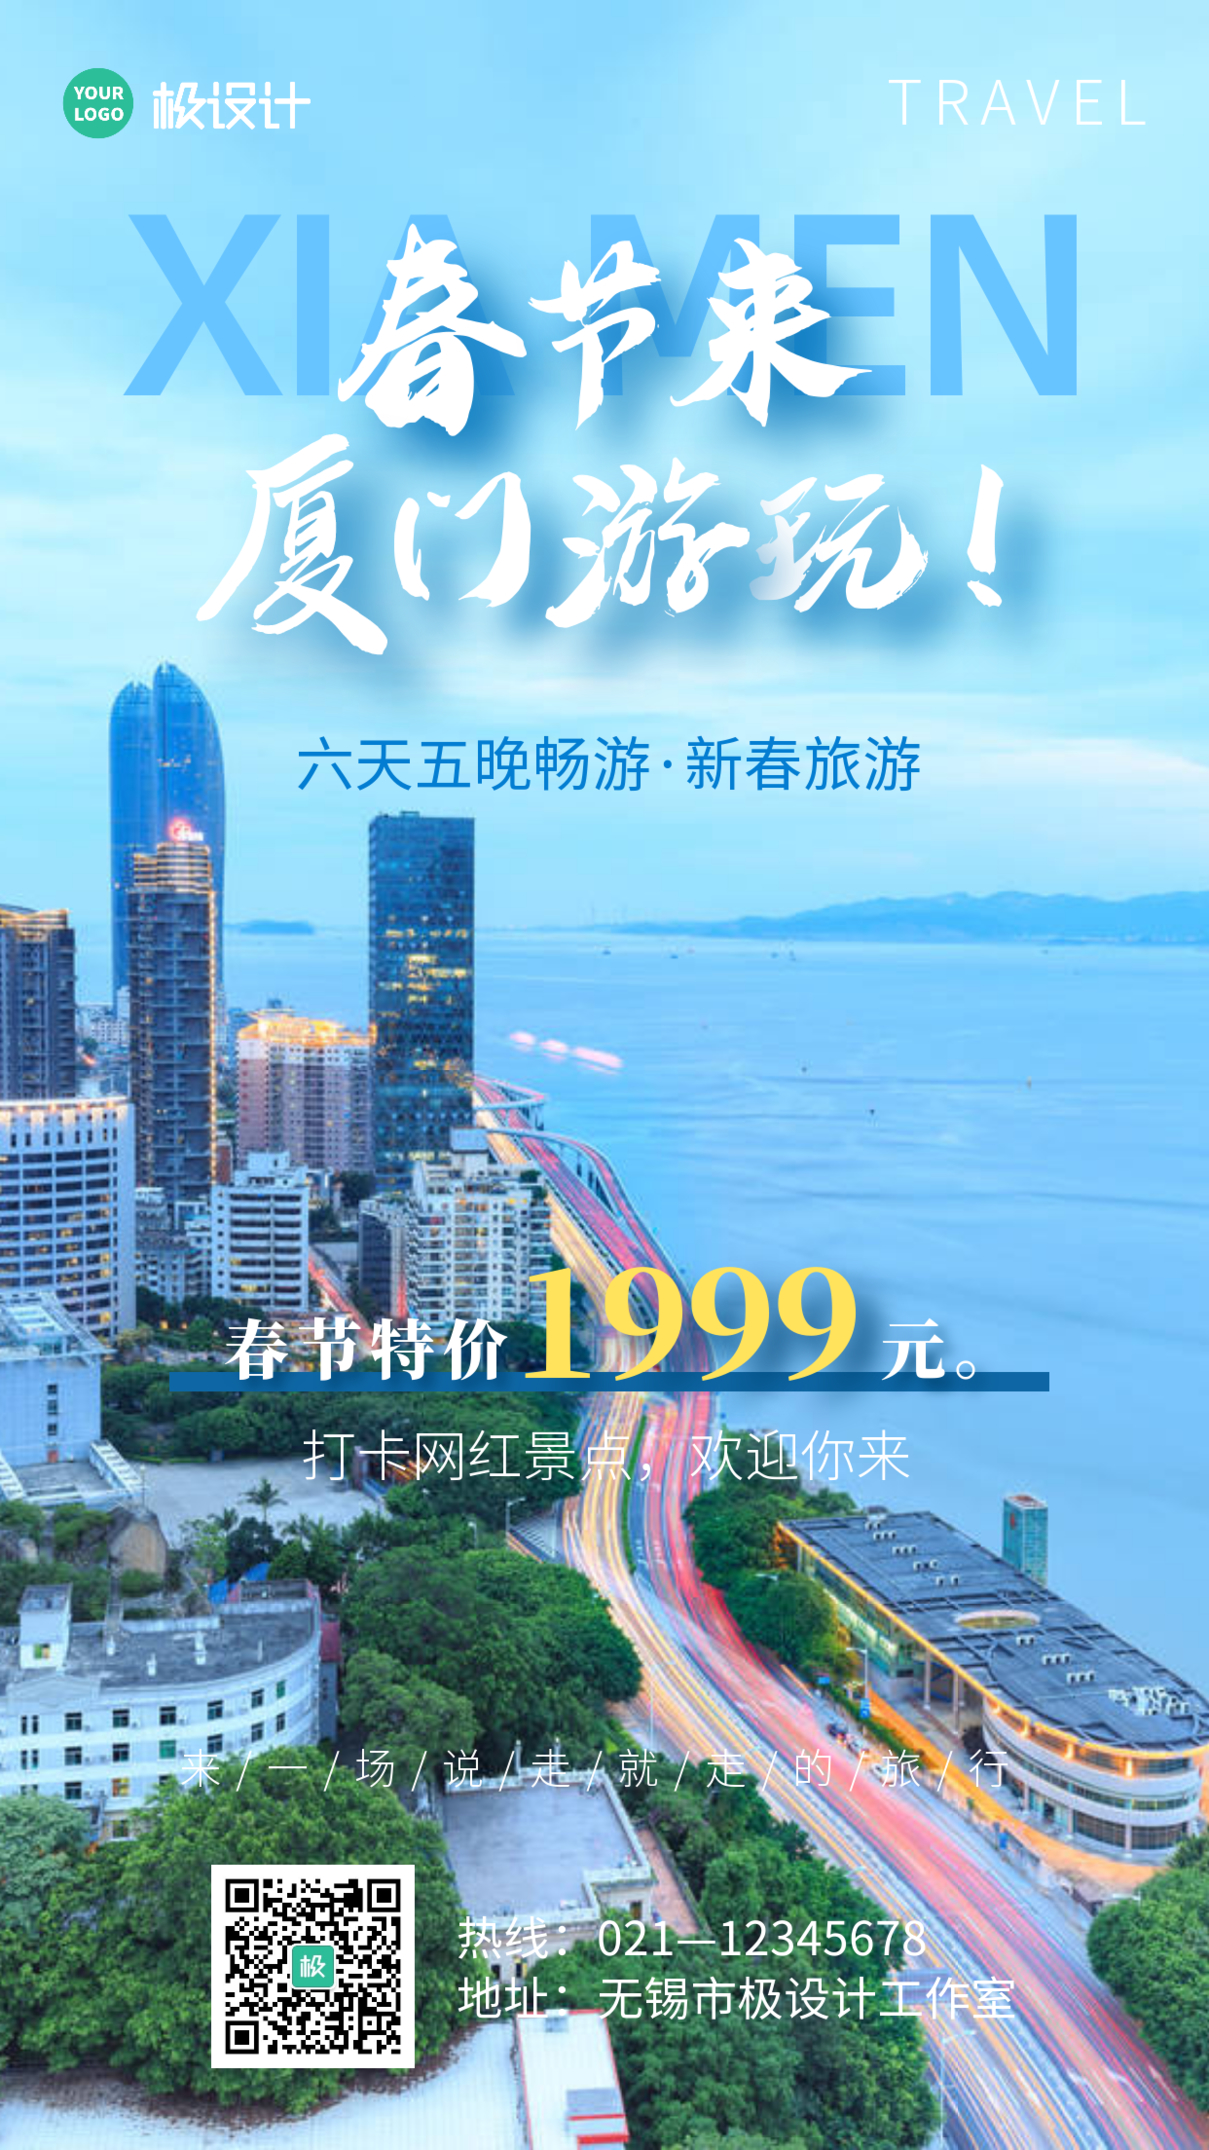 春节来厦门玩蓝色创意旅游宣传手机海报